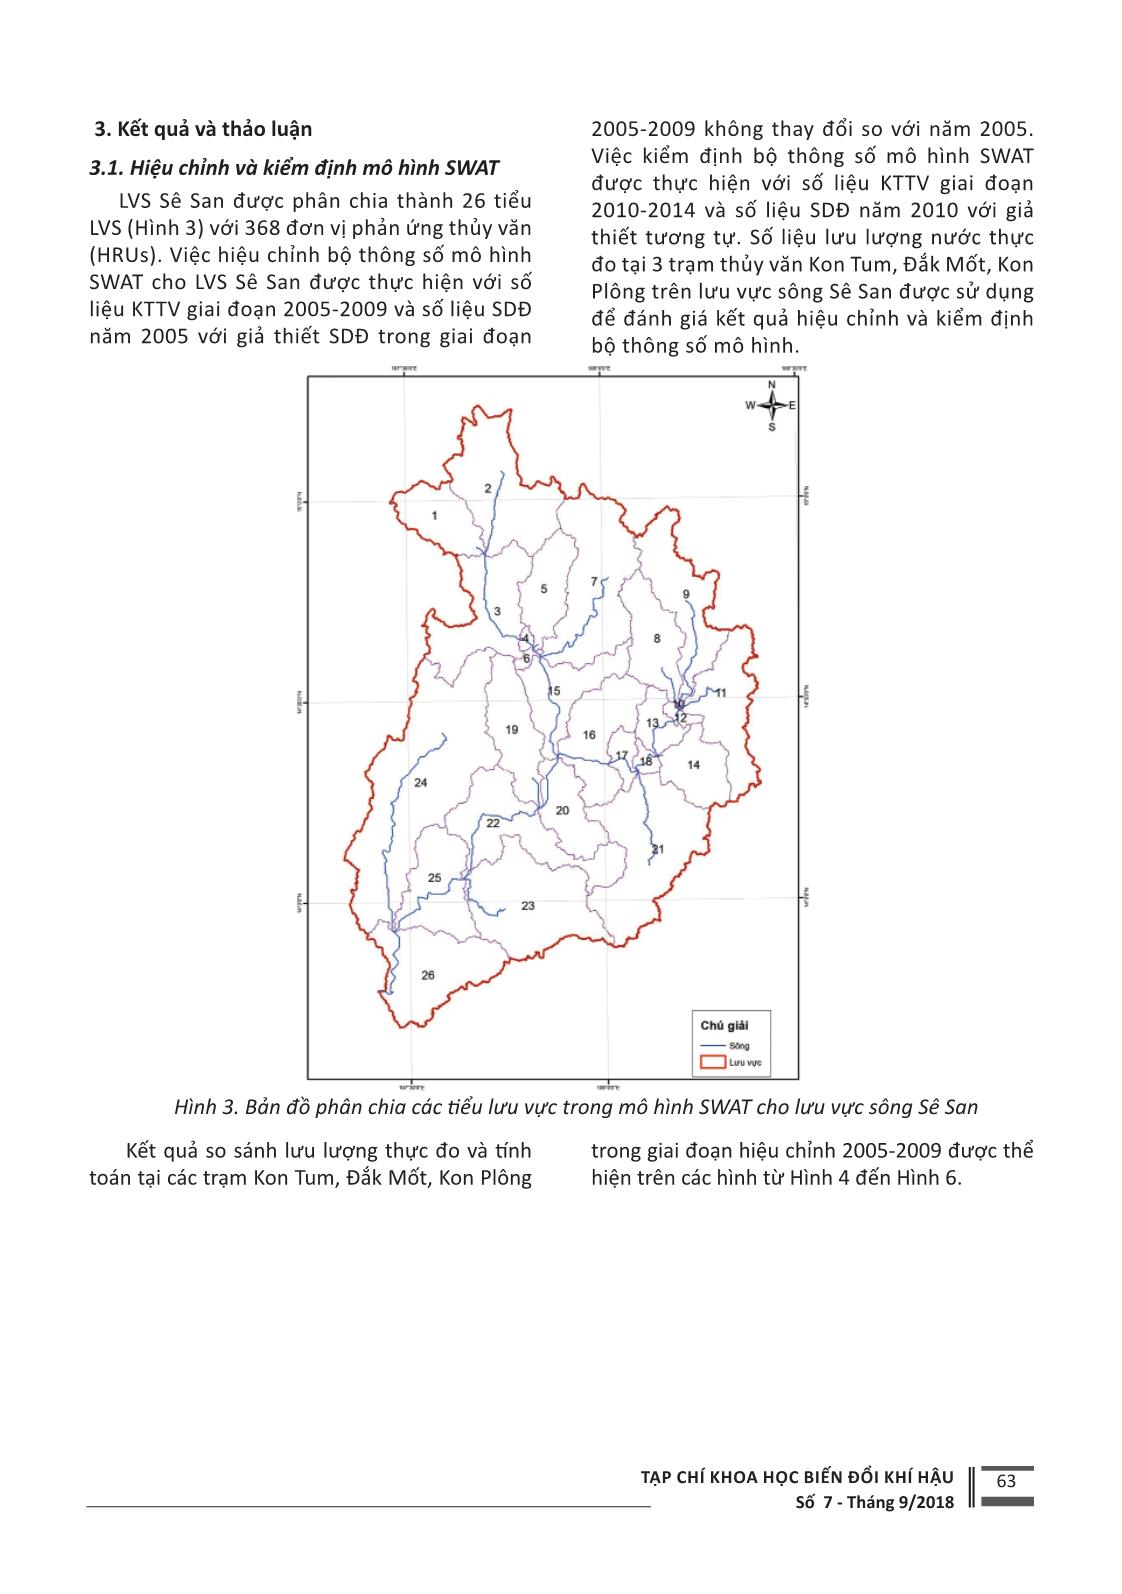 Nghiên cứu, đánh giá tác động của thay đổi sử dụng đất đến tài nguyên nước mặt cho lưu vực sông Sê San trang 4